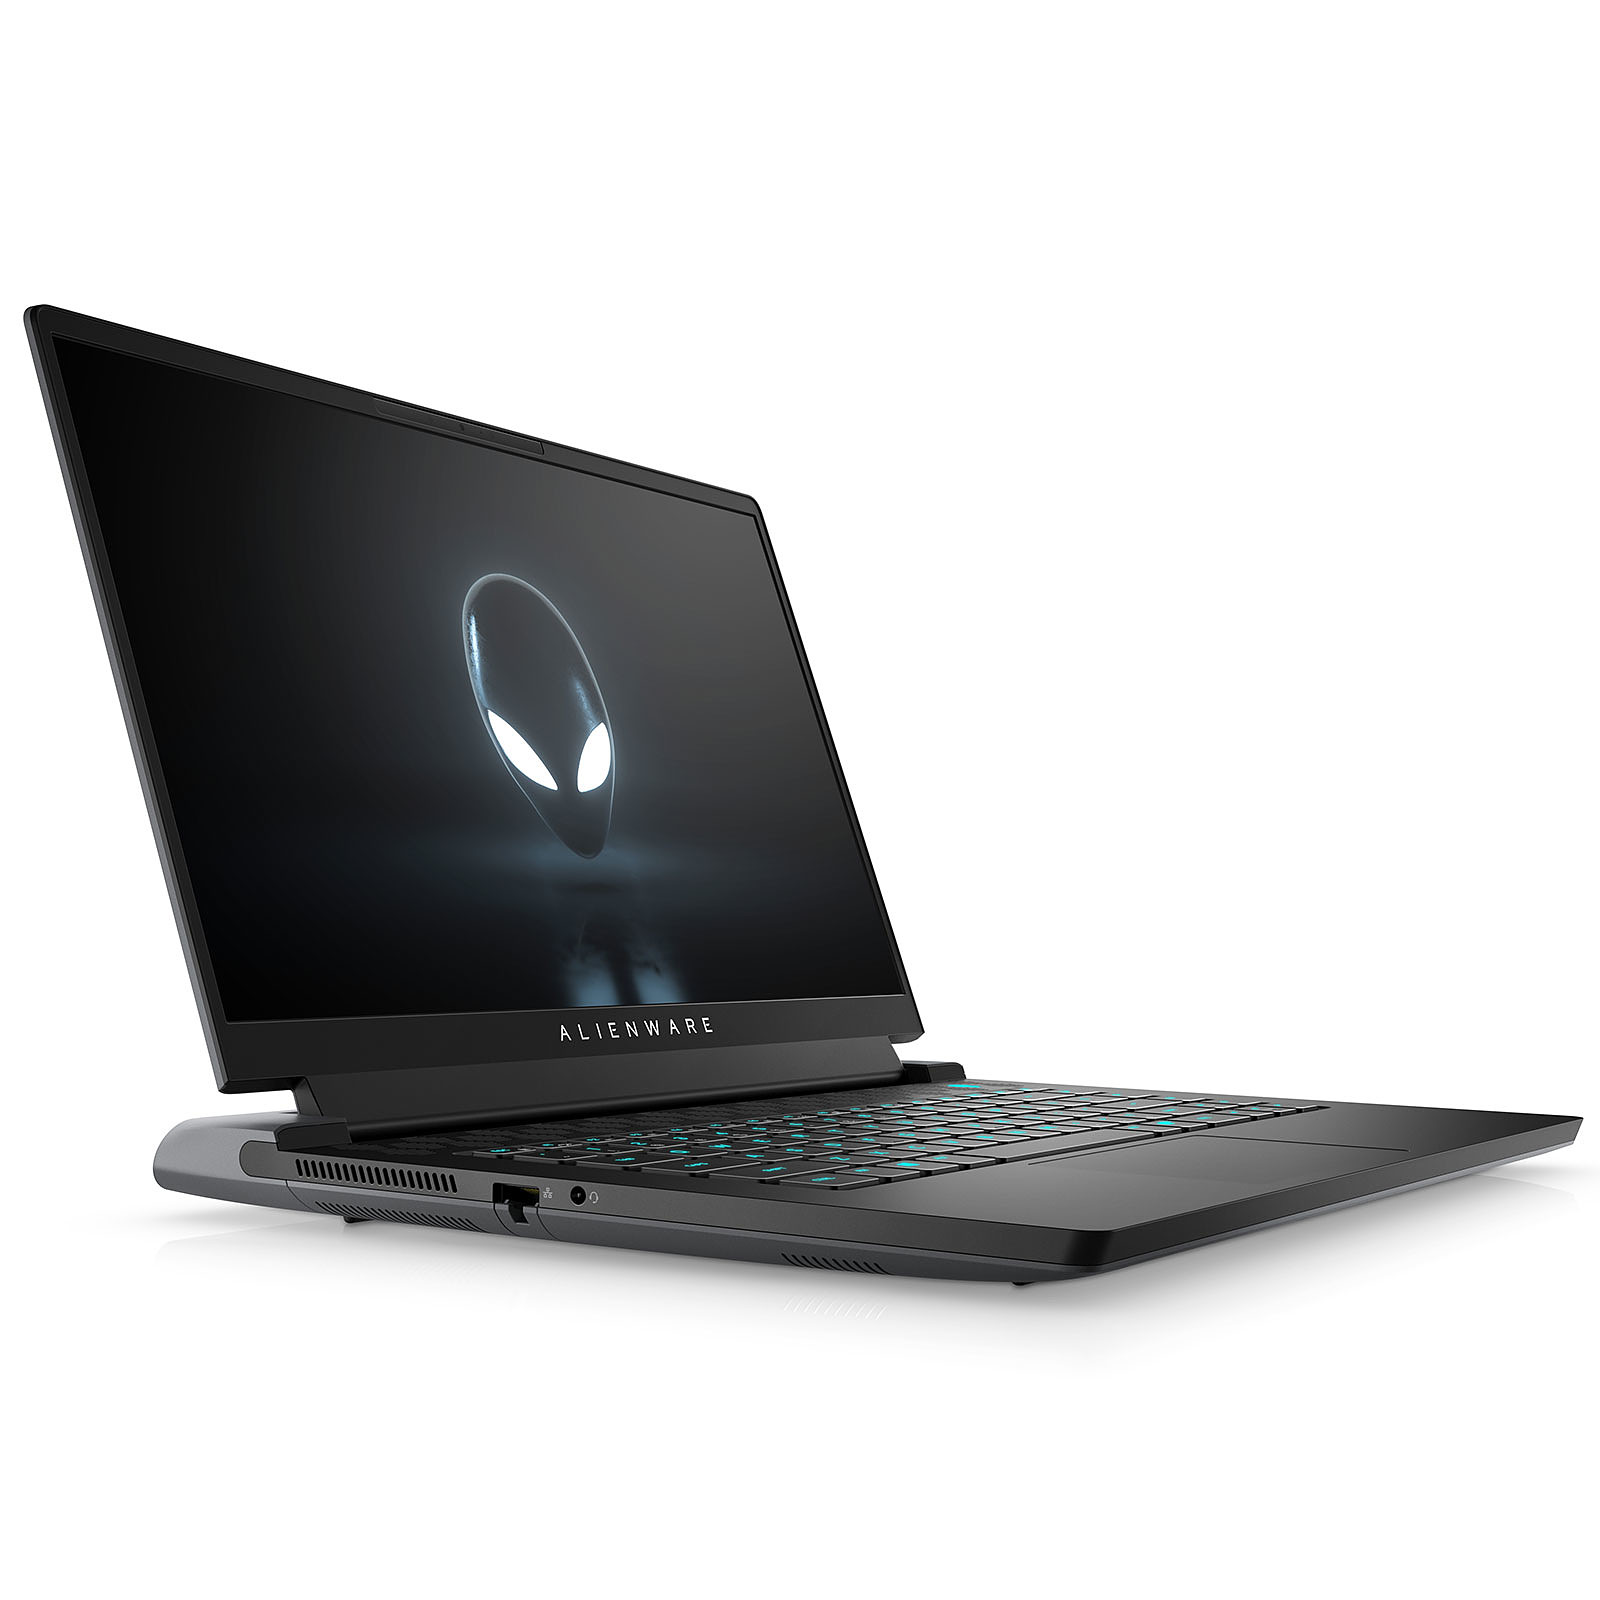 Alienware m15 R6-167 · Occasion - PC portable Alienware - Occasion